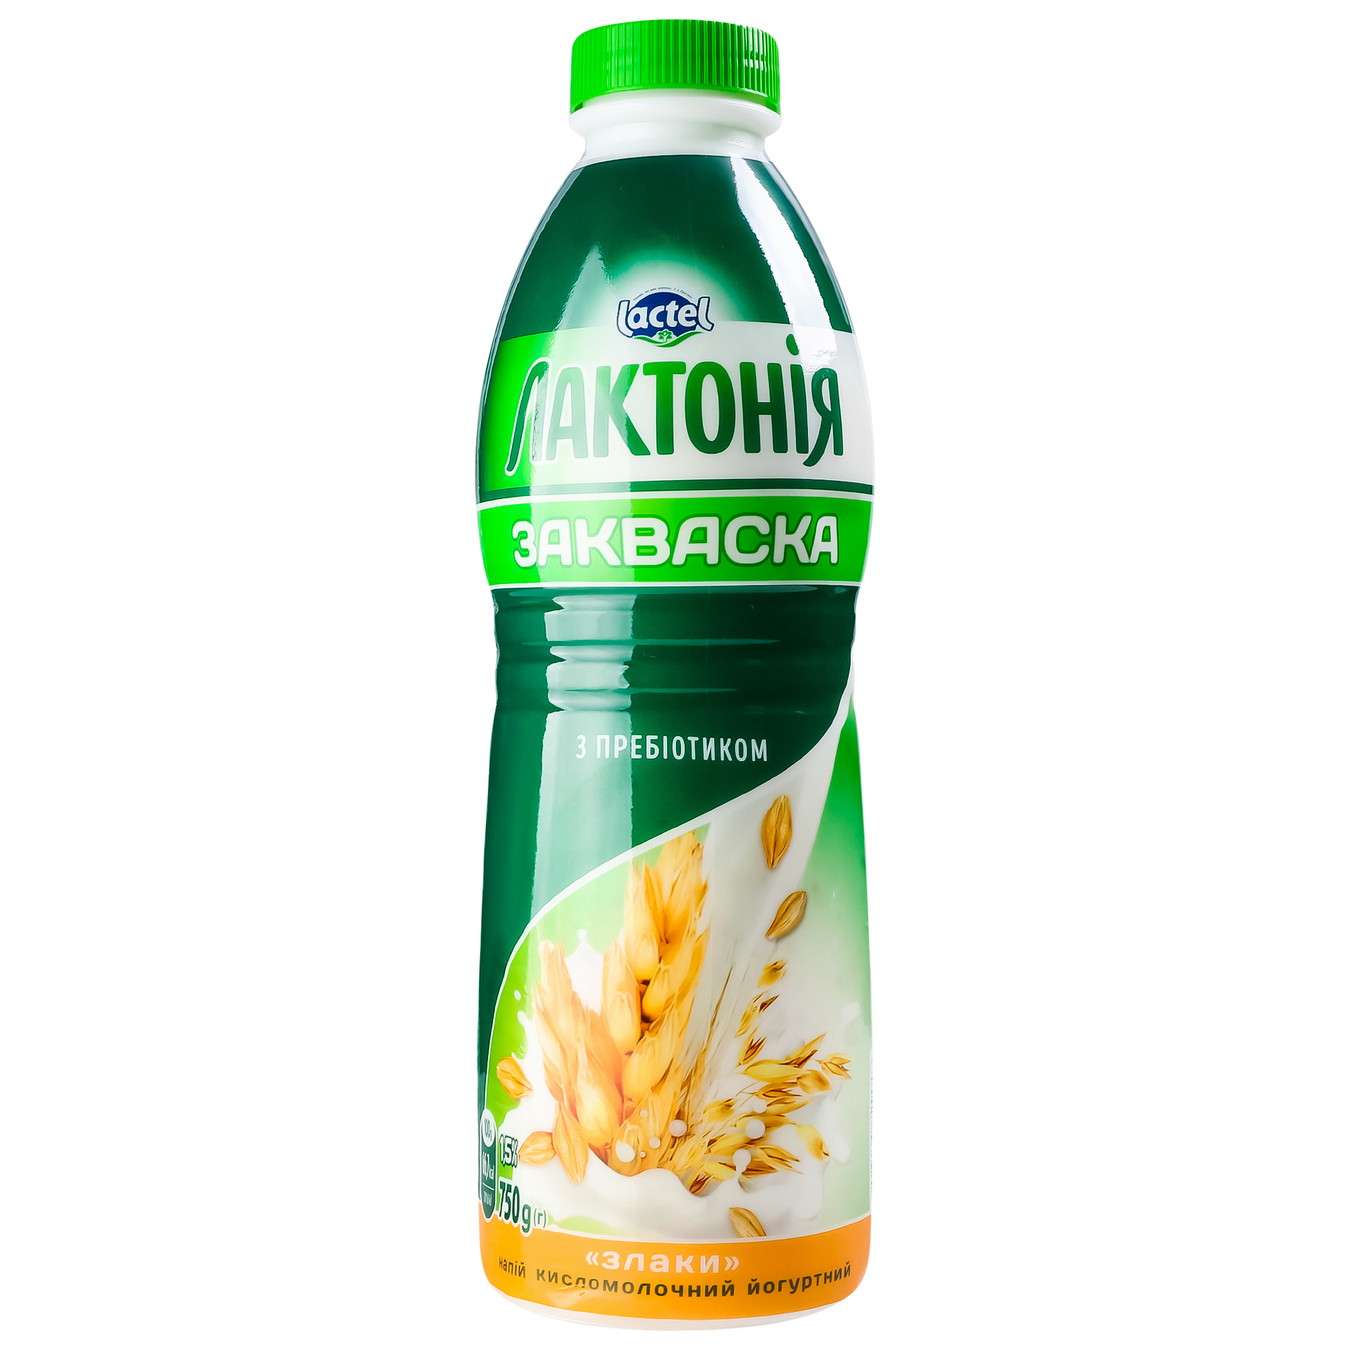 Lactonia Sourdough Cereals 1,5% 750g